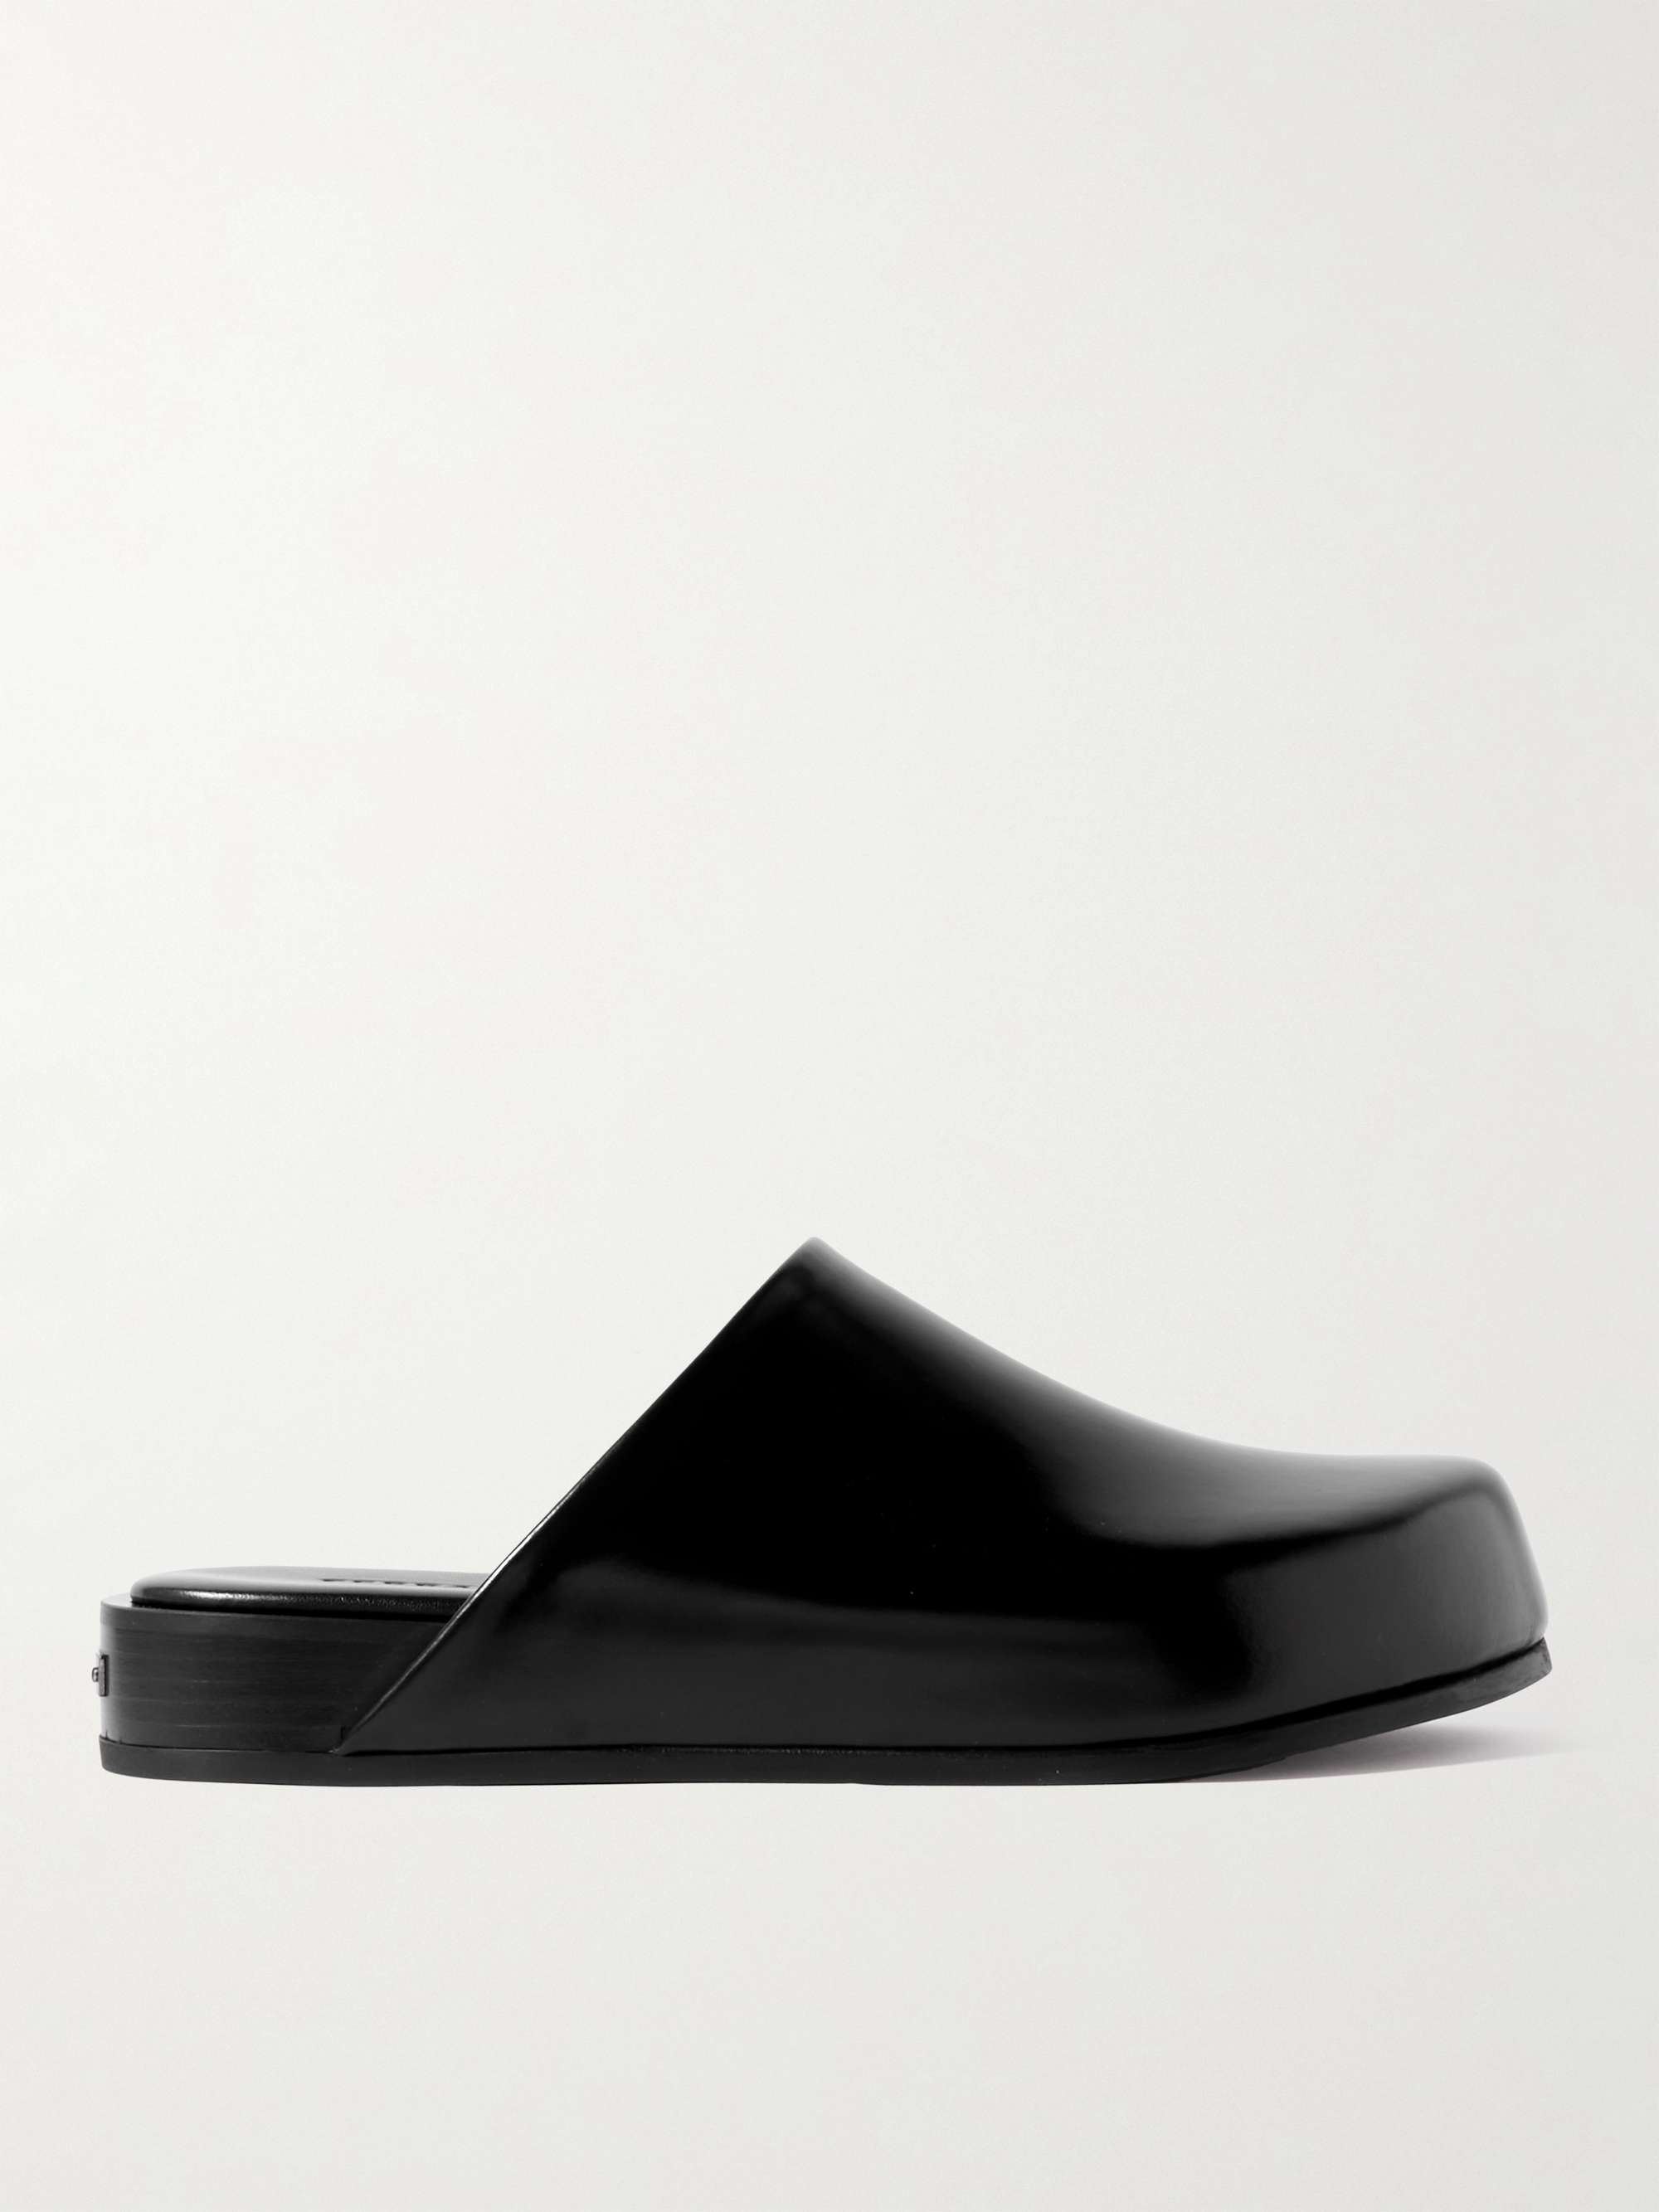 Ferragamo Sandals For Men | proyectosarquitectonicos.ua.es